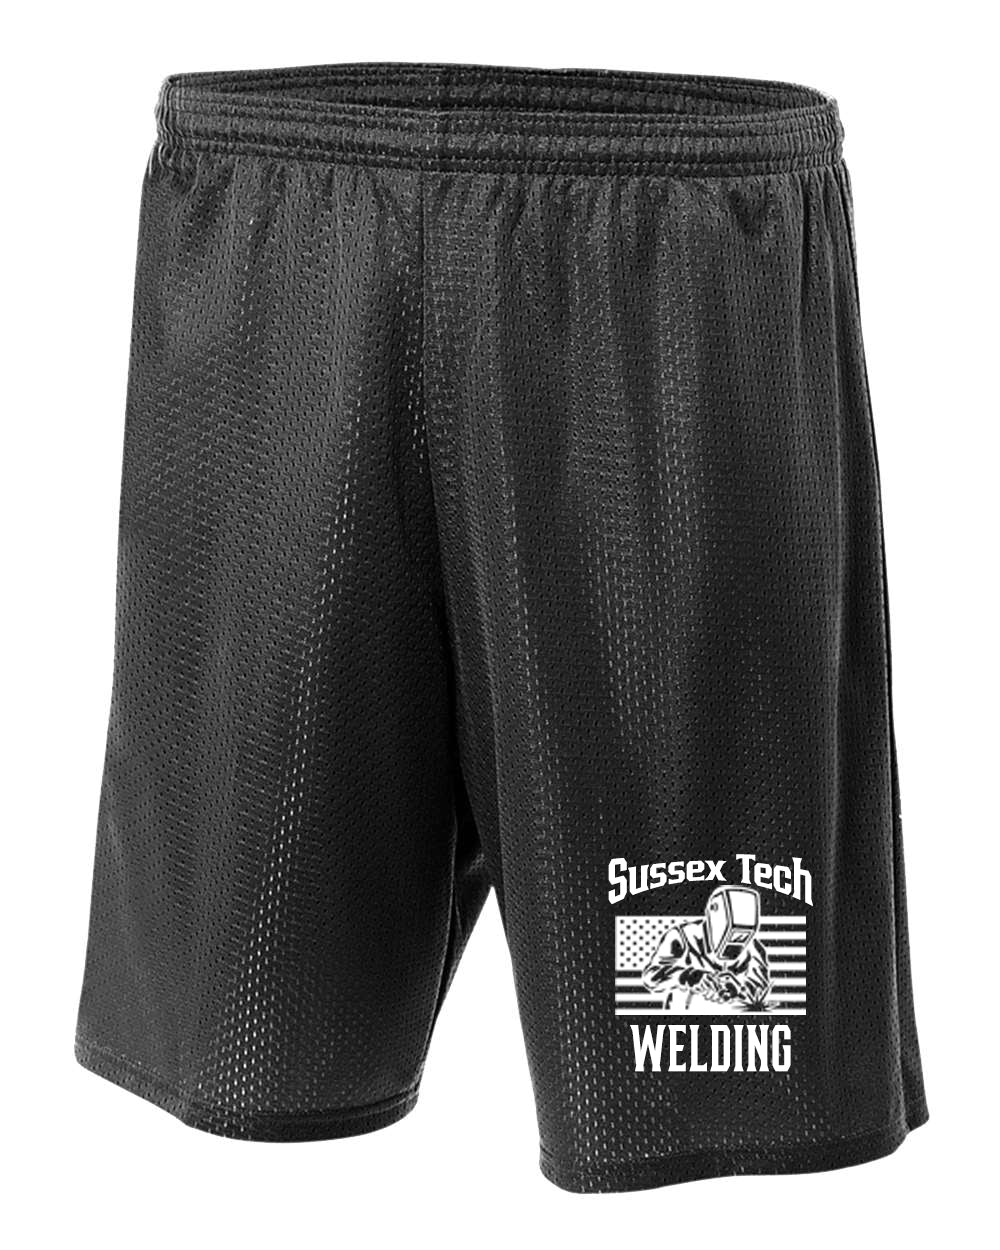 Sussex Tech Welding Design 1 Mesh Shorts